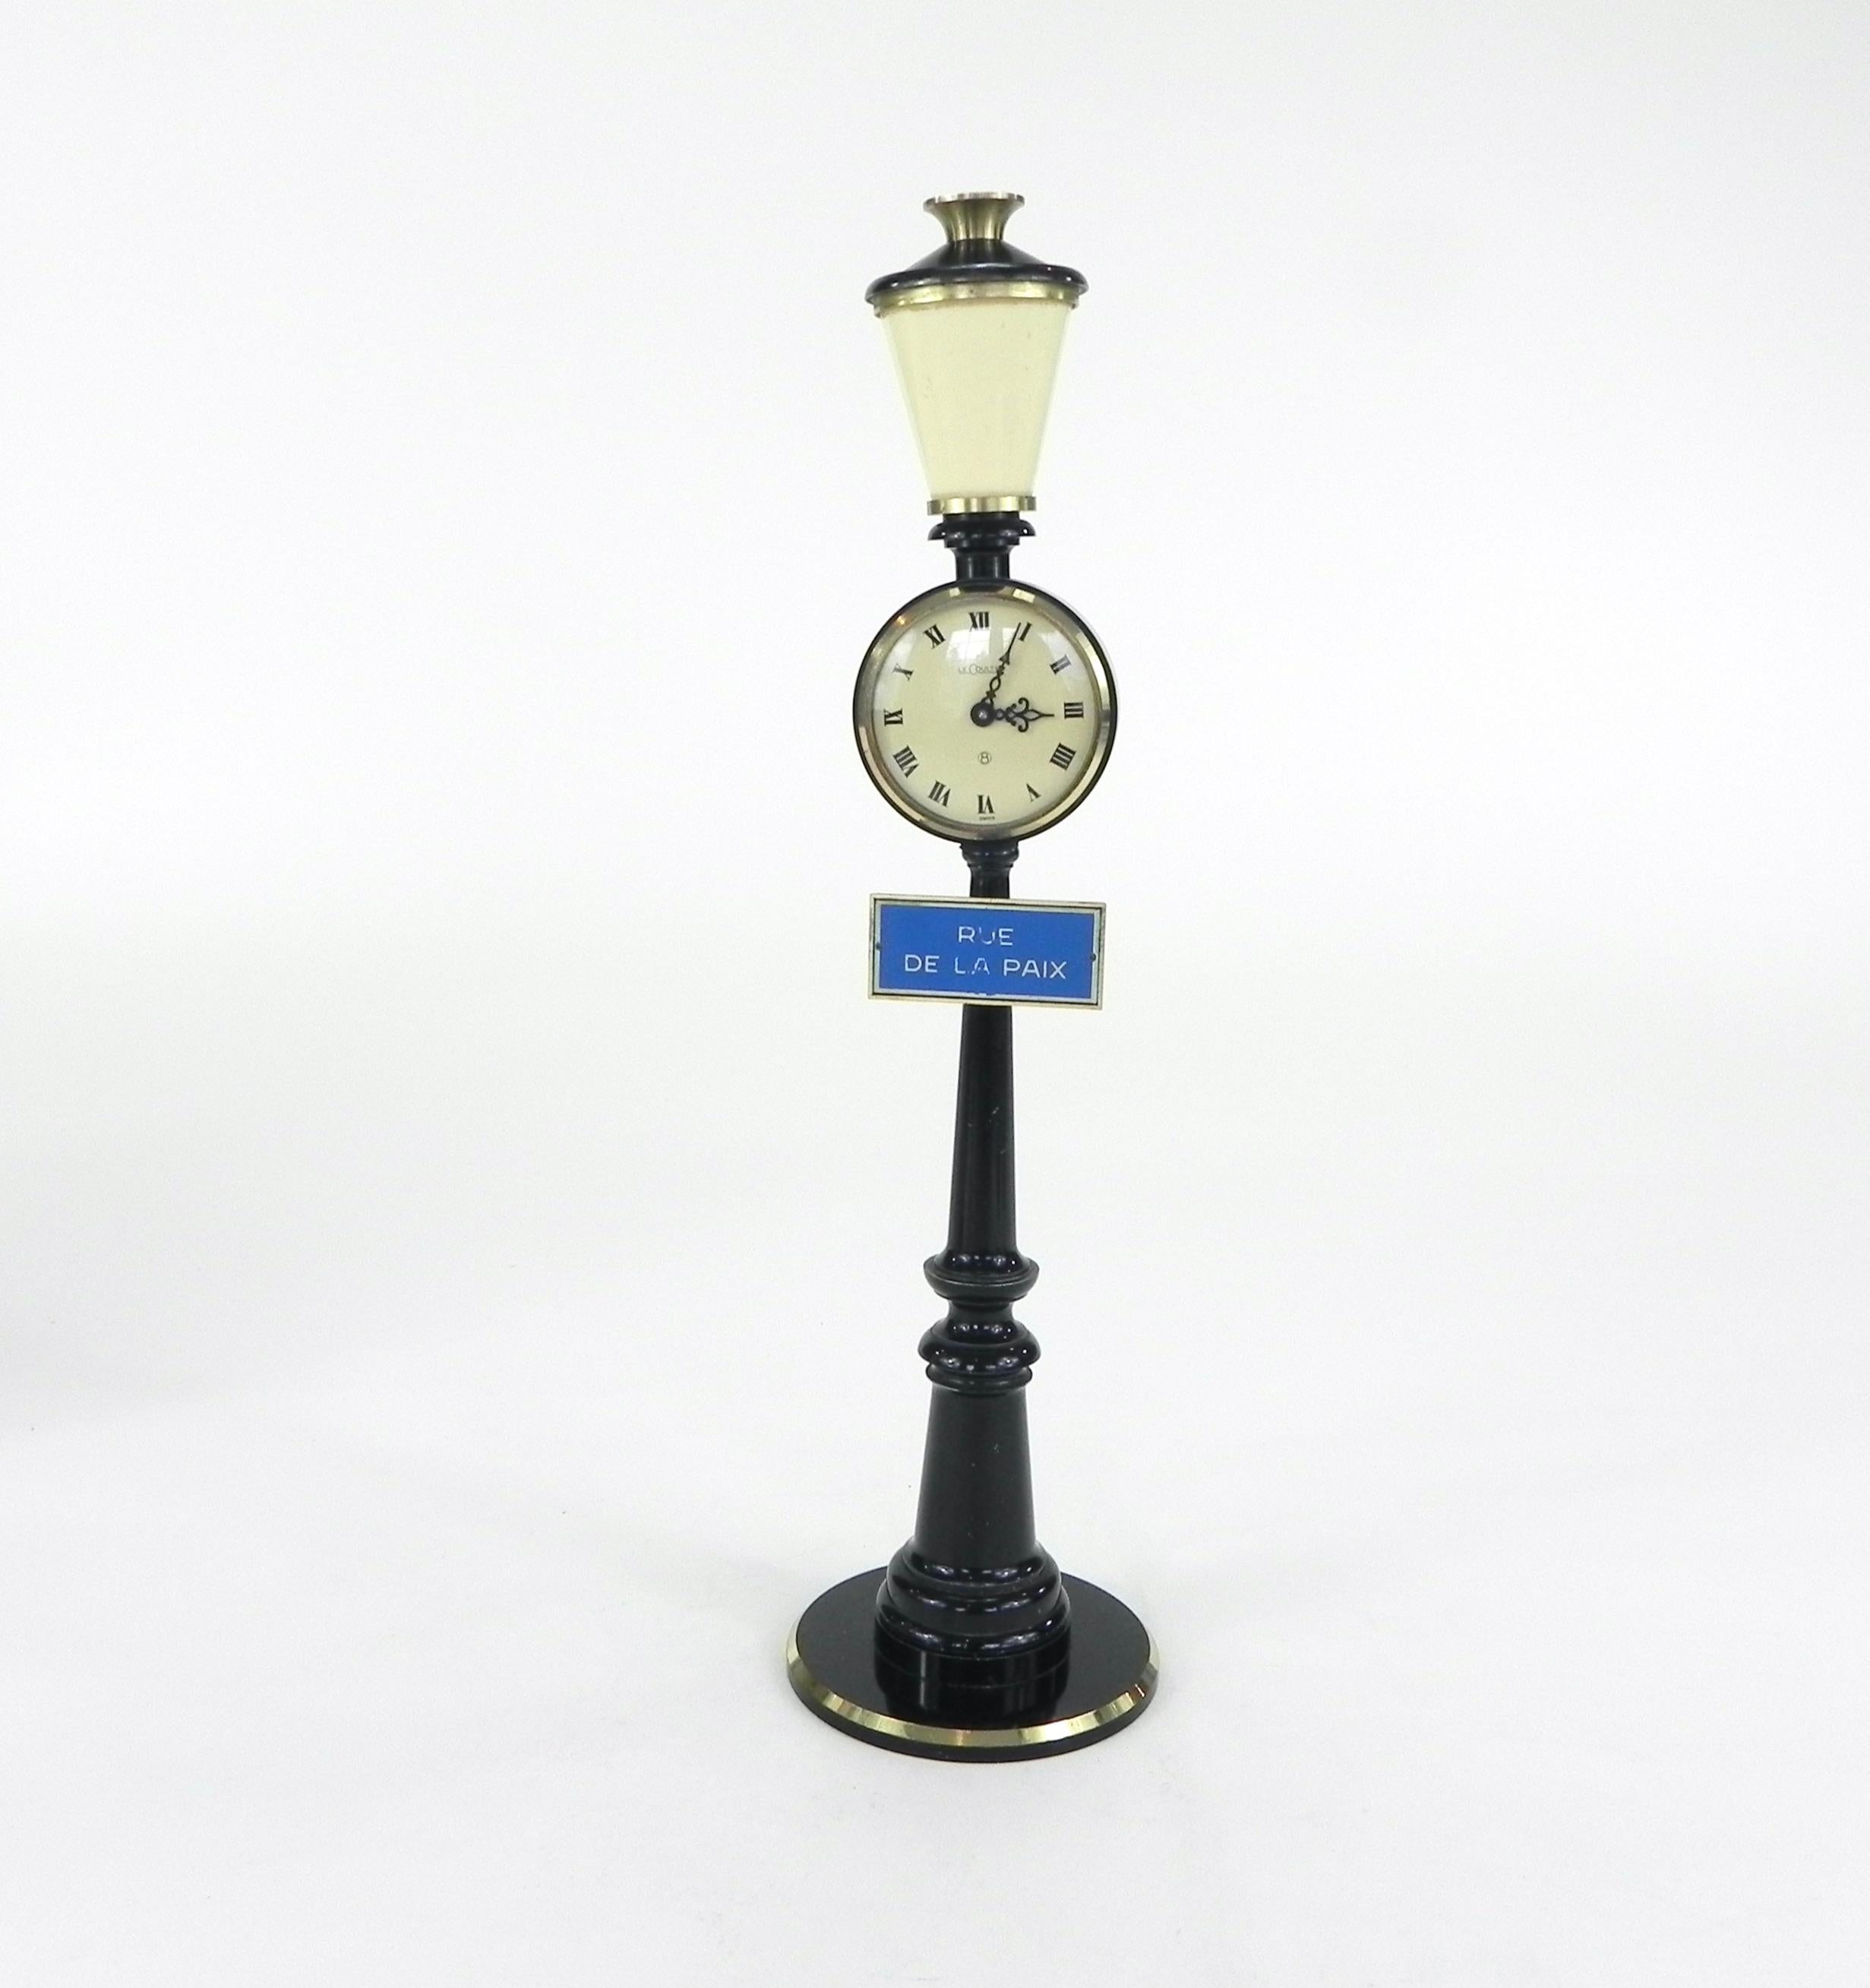 Schöne Vintage Jaeger Le Coultre figurale Miniatur-Straßenlaterne Uhr für Tisch oder Schreibtisch. Es wurde getestet und funktioniert.

Diese Uhr ist in sehr gutem Zustand mit minimalen bis keinen sichtbaren Verschleiß. Lediglich das Schild 